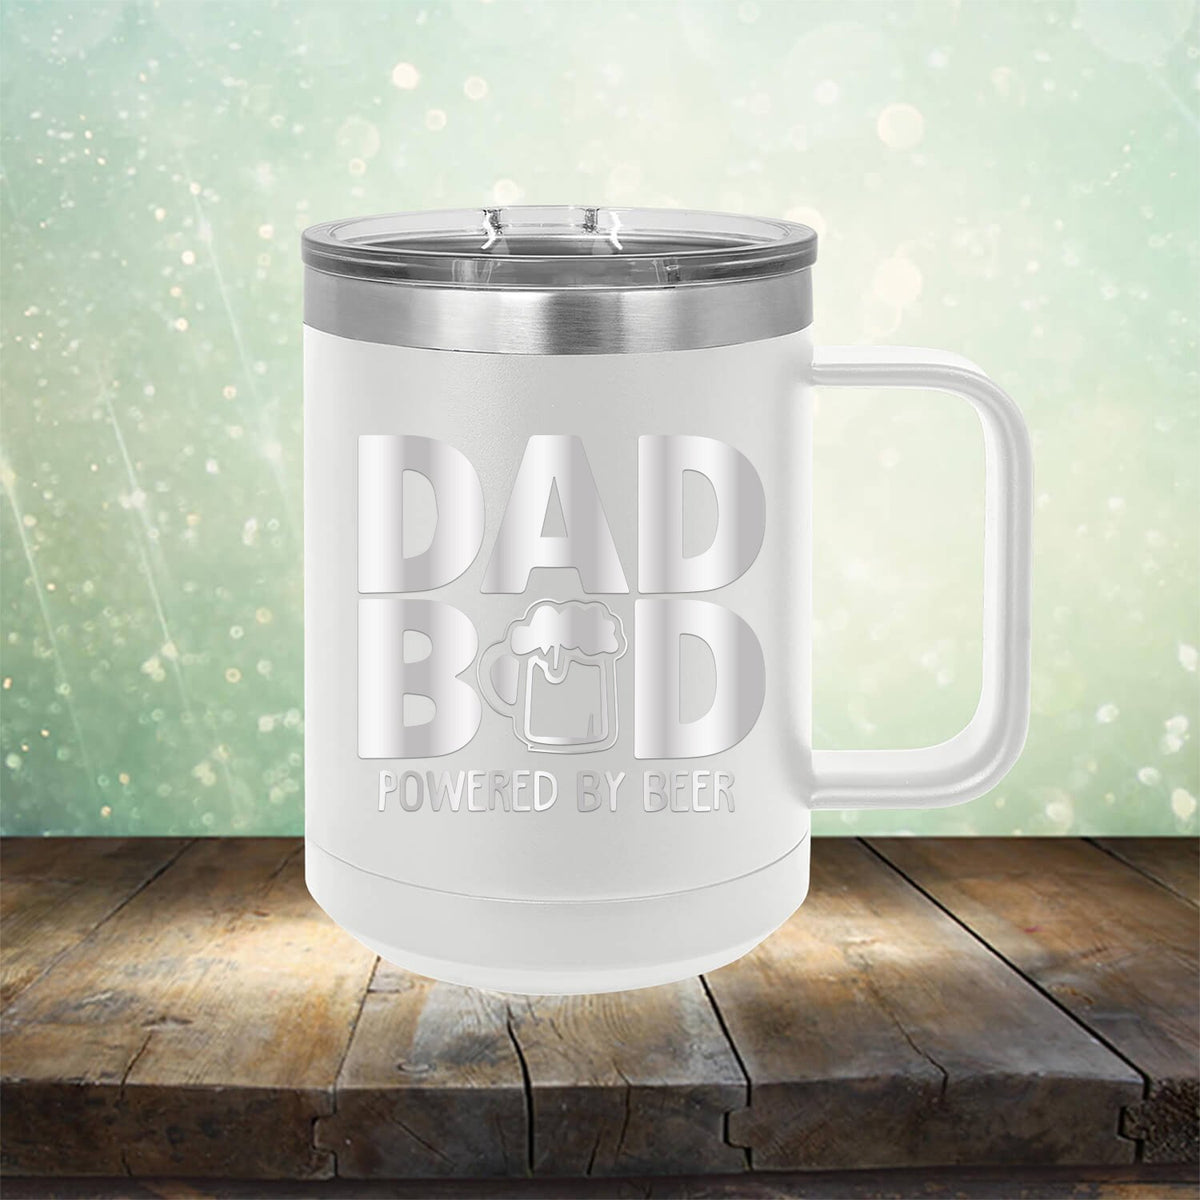 Dad Bod Powered by Beer - Laser Etched Tumbler Mug